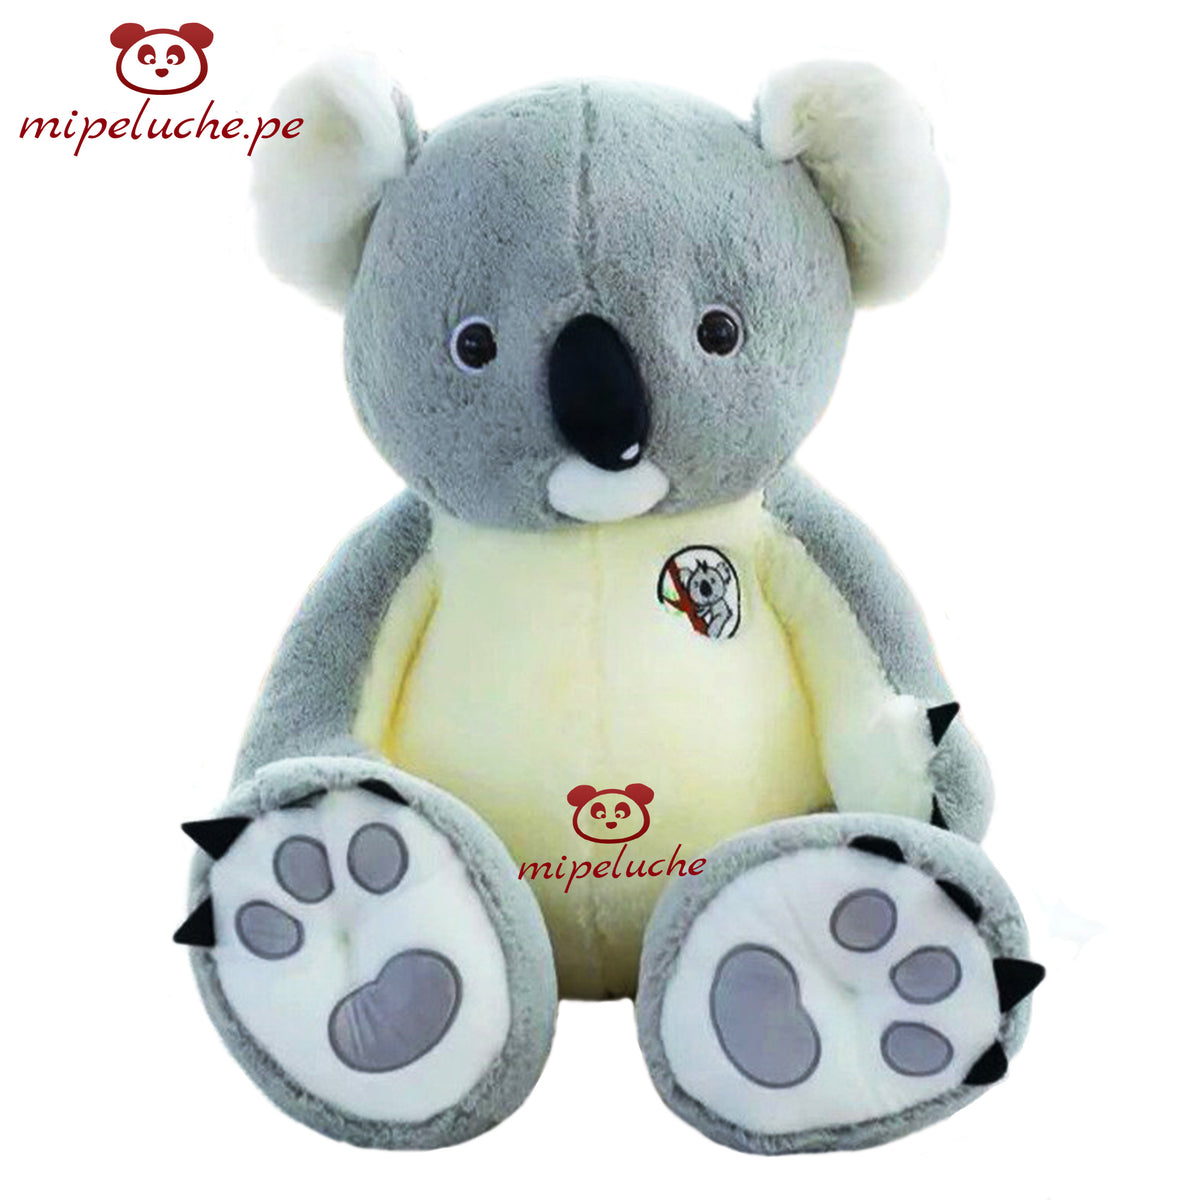 Peluche Koala Grande 150 Cm Original De Felpa Koalas –